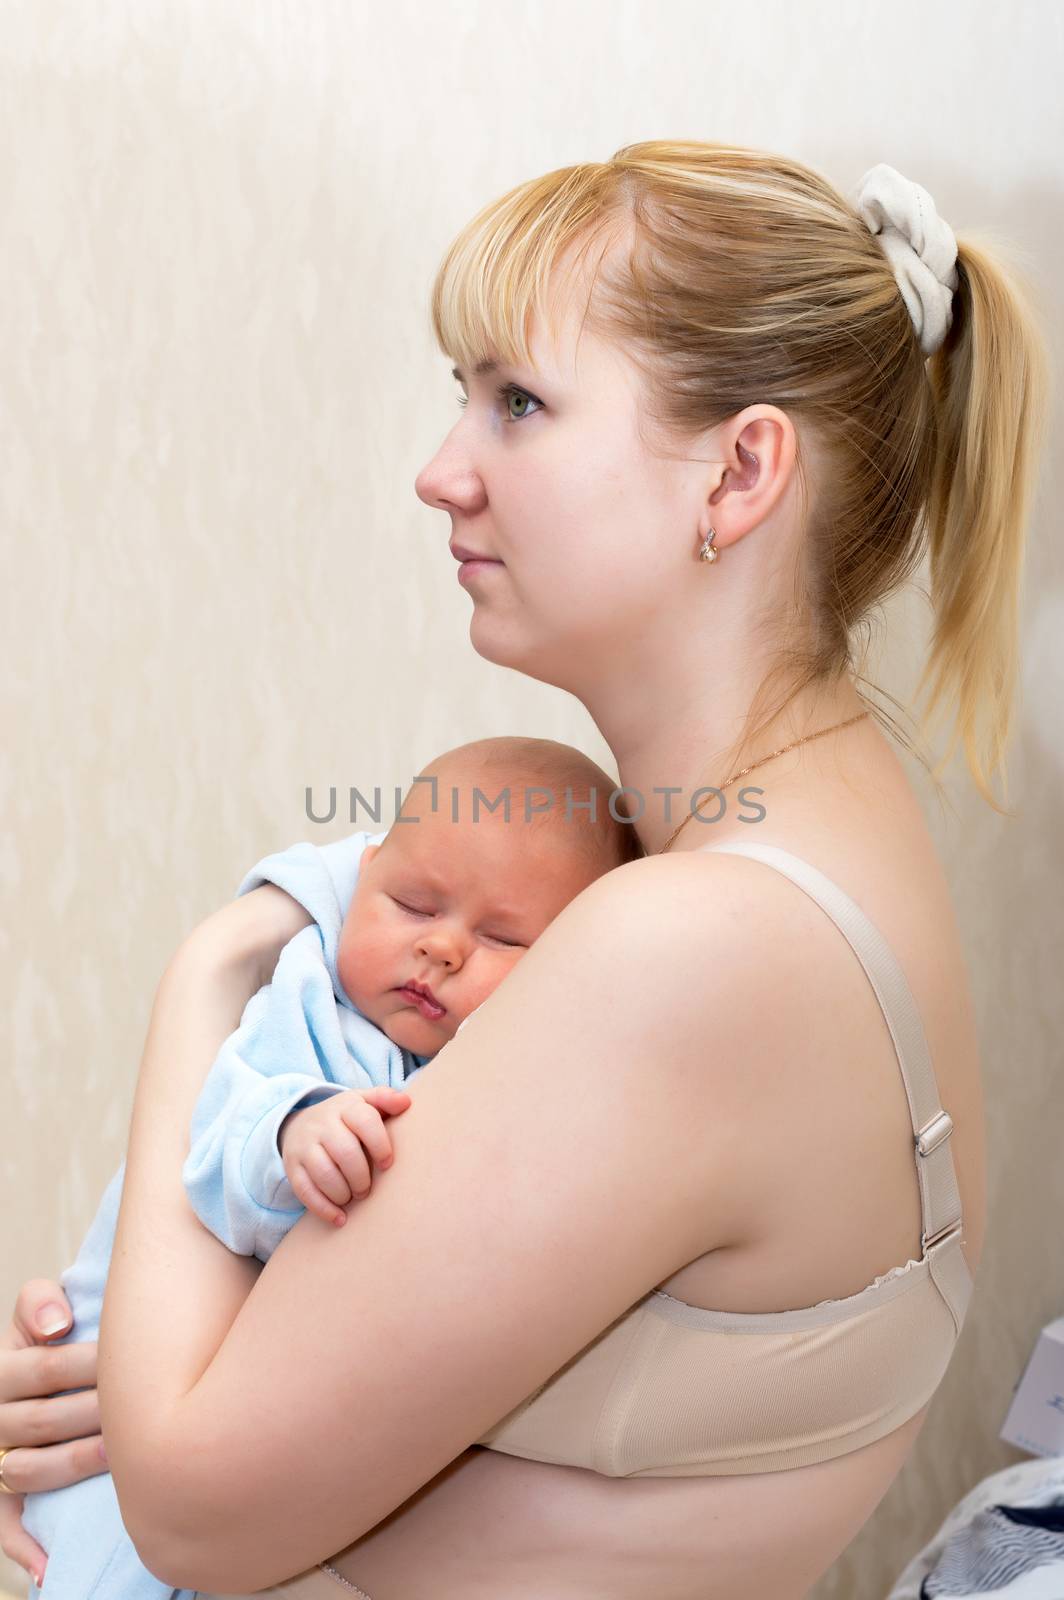 Baby with mom by kromeshnik